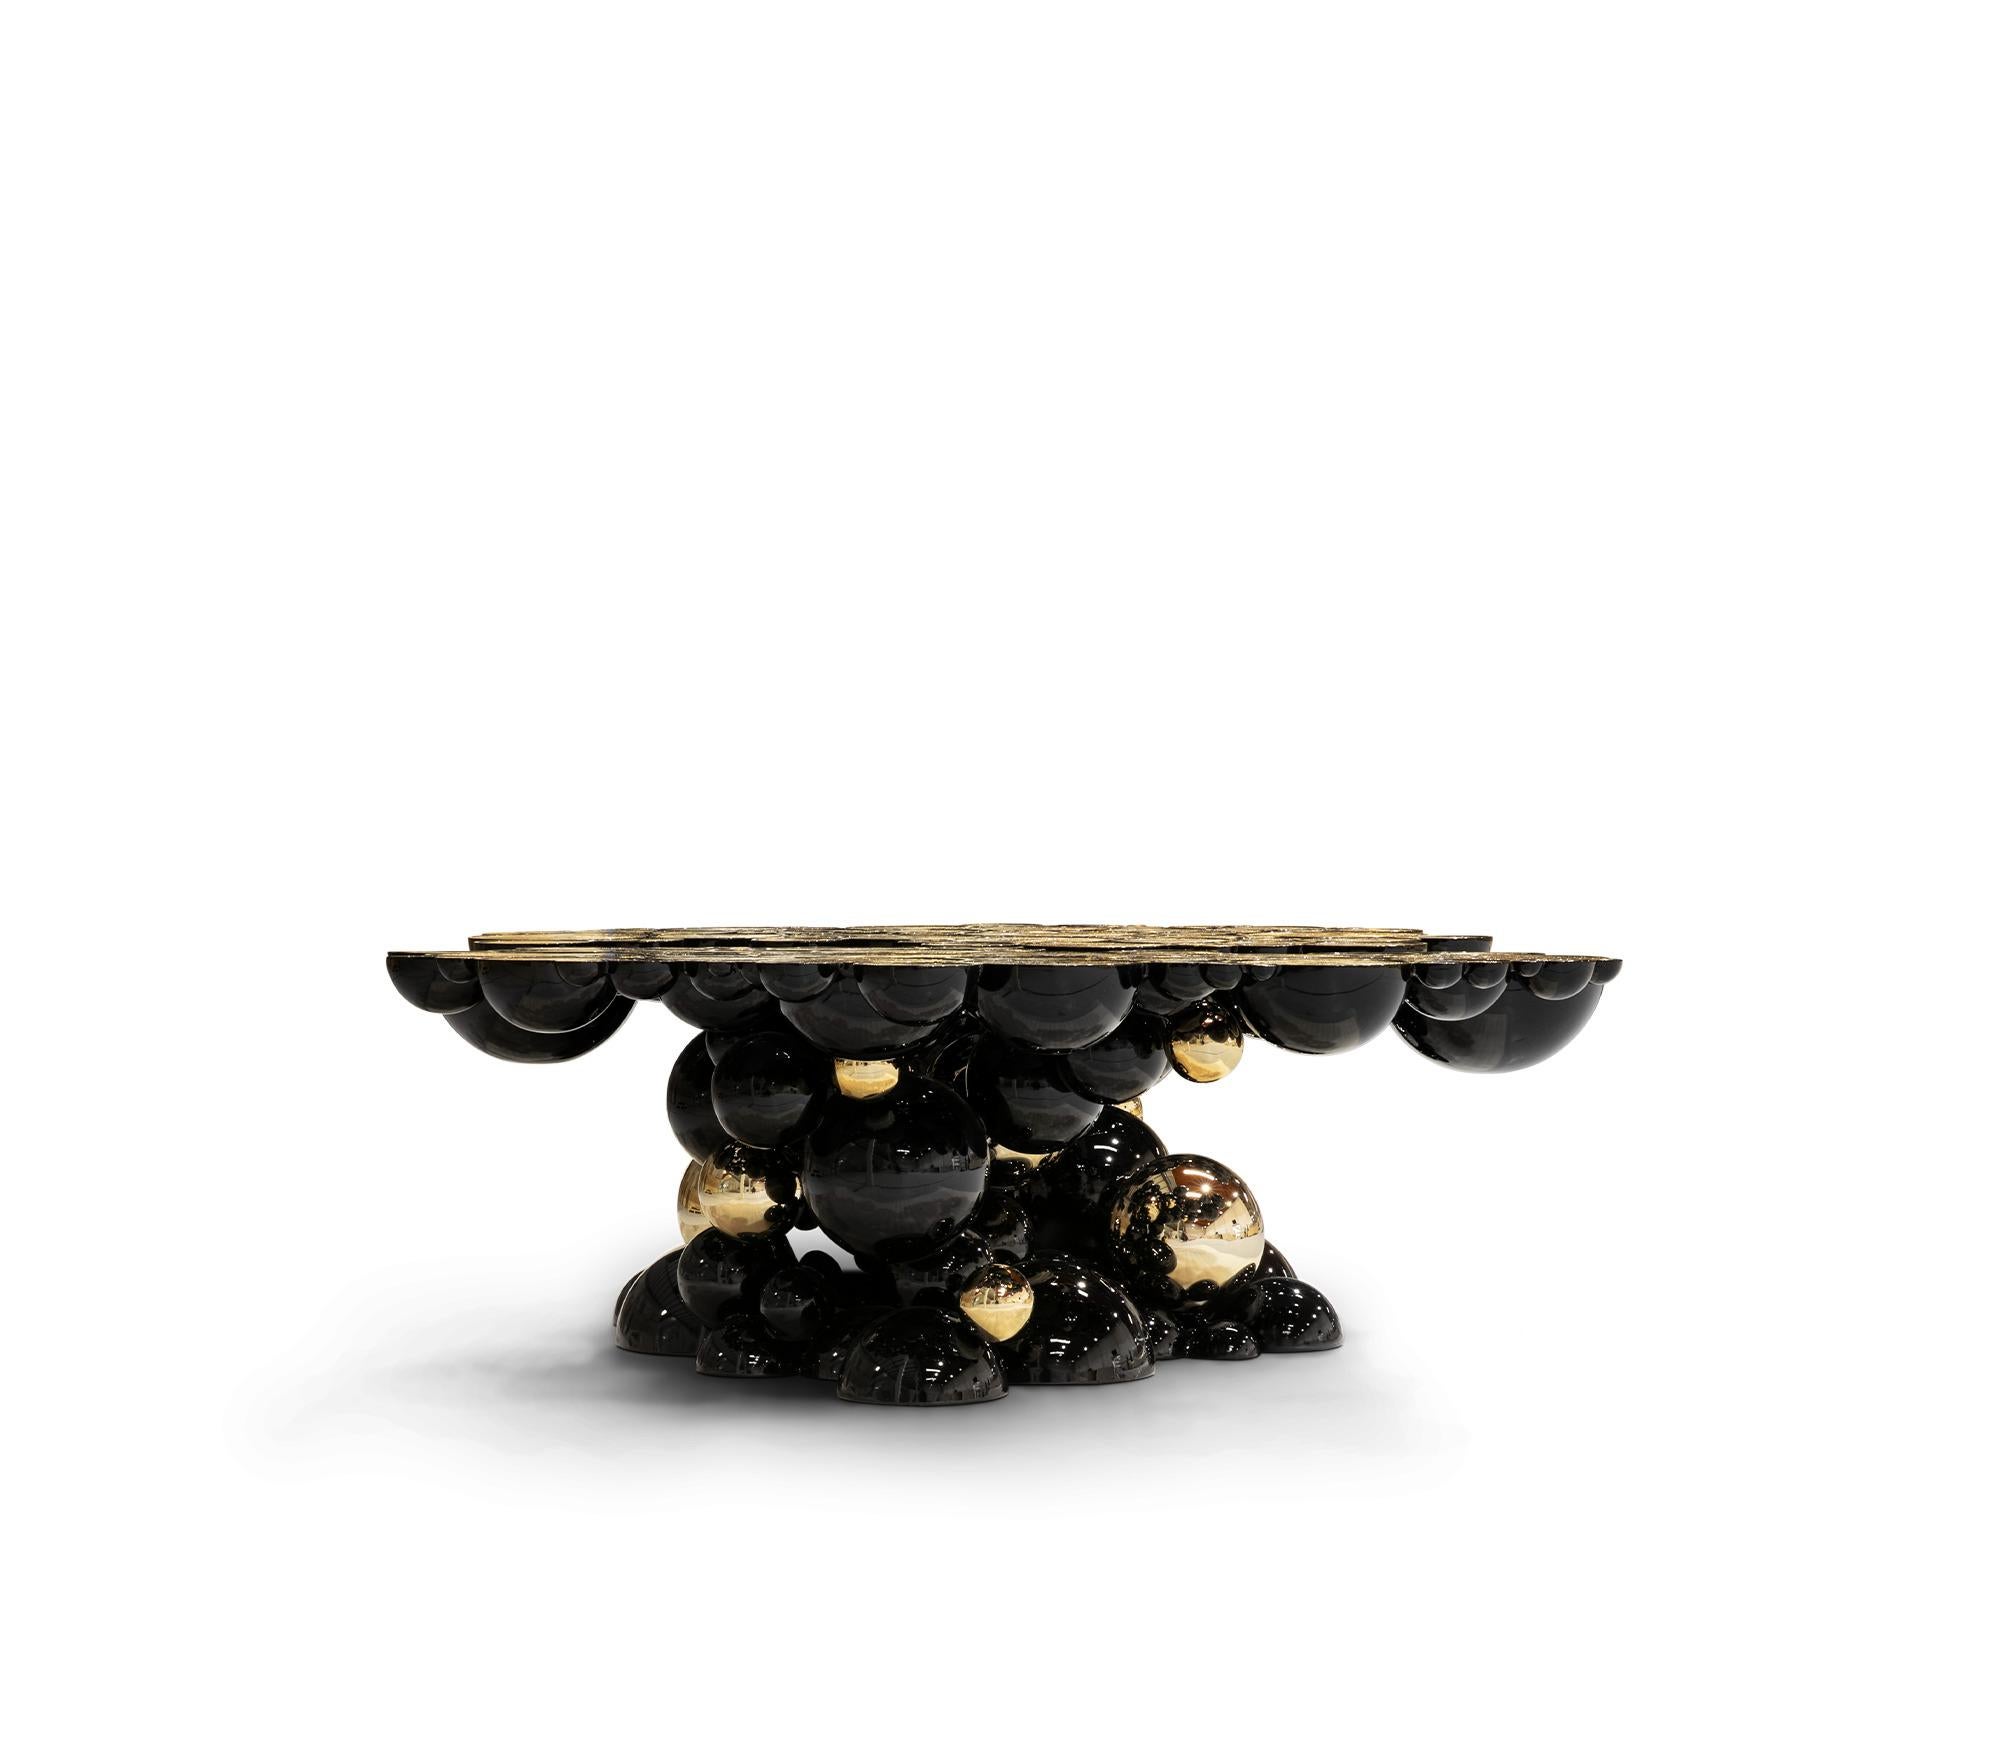 Centre-Tisch „Atom“ aus Metall

Ein ovaler Mitteltisch aus Aluminiumkugeln, die miteinander verbunden sind, um ein Muster und eine Struktur zu erzeugen, schwarz lackiert und vergoldet. Seine Oberflächenstruktur, die an geschnittenes Holz erinnert,